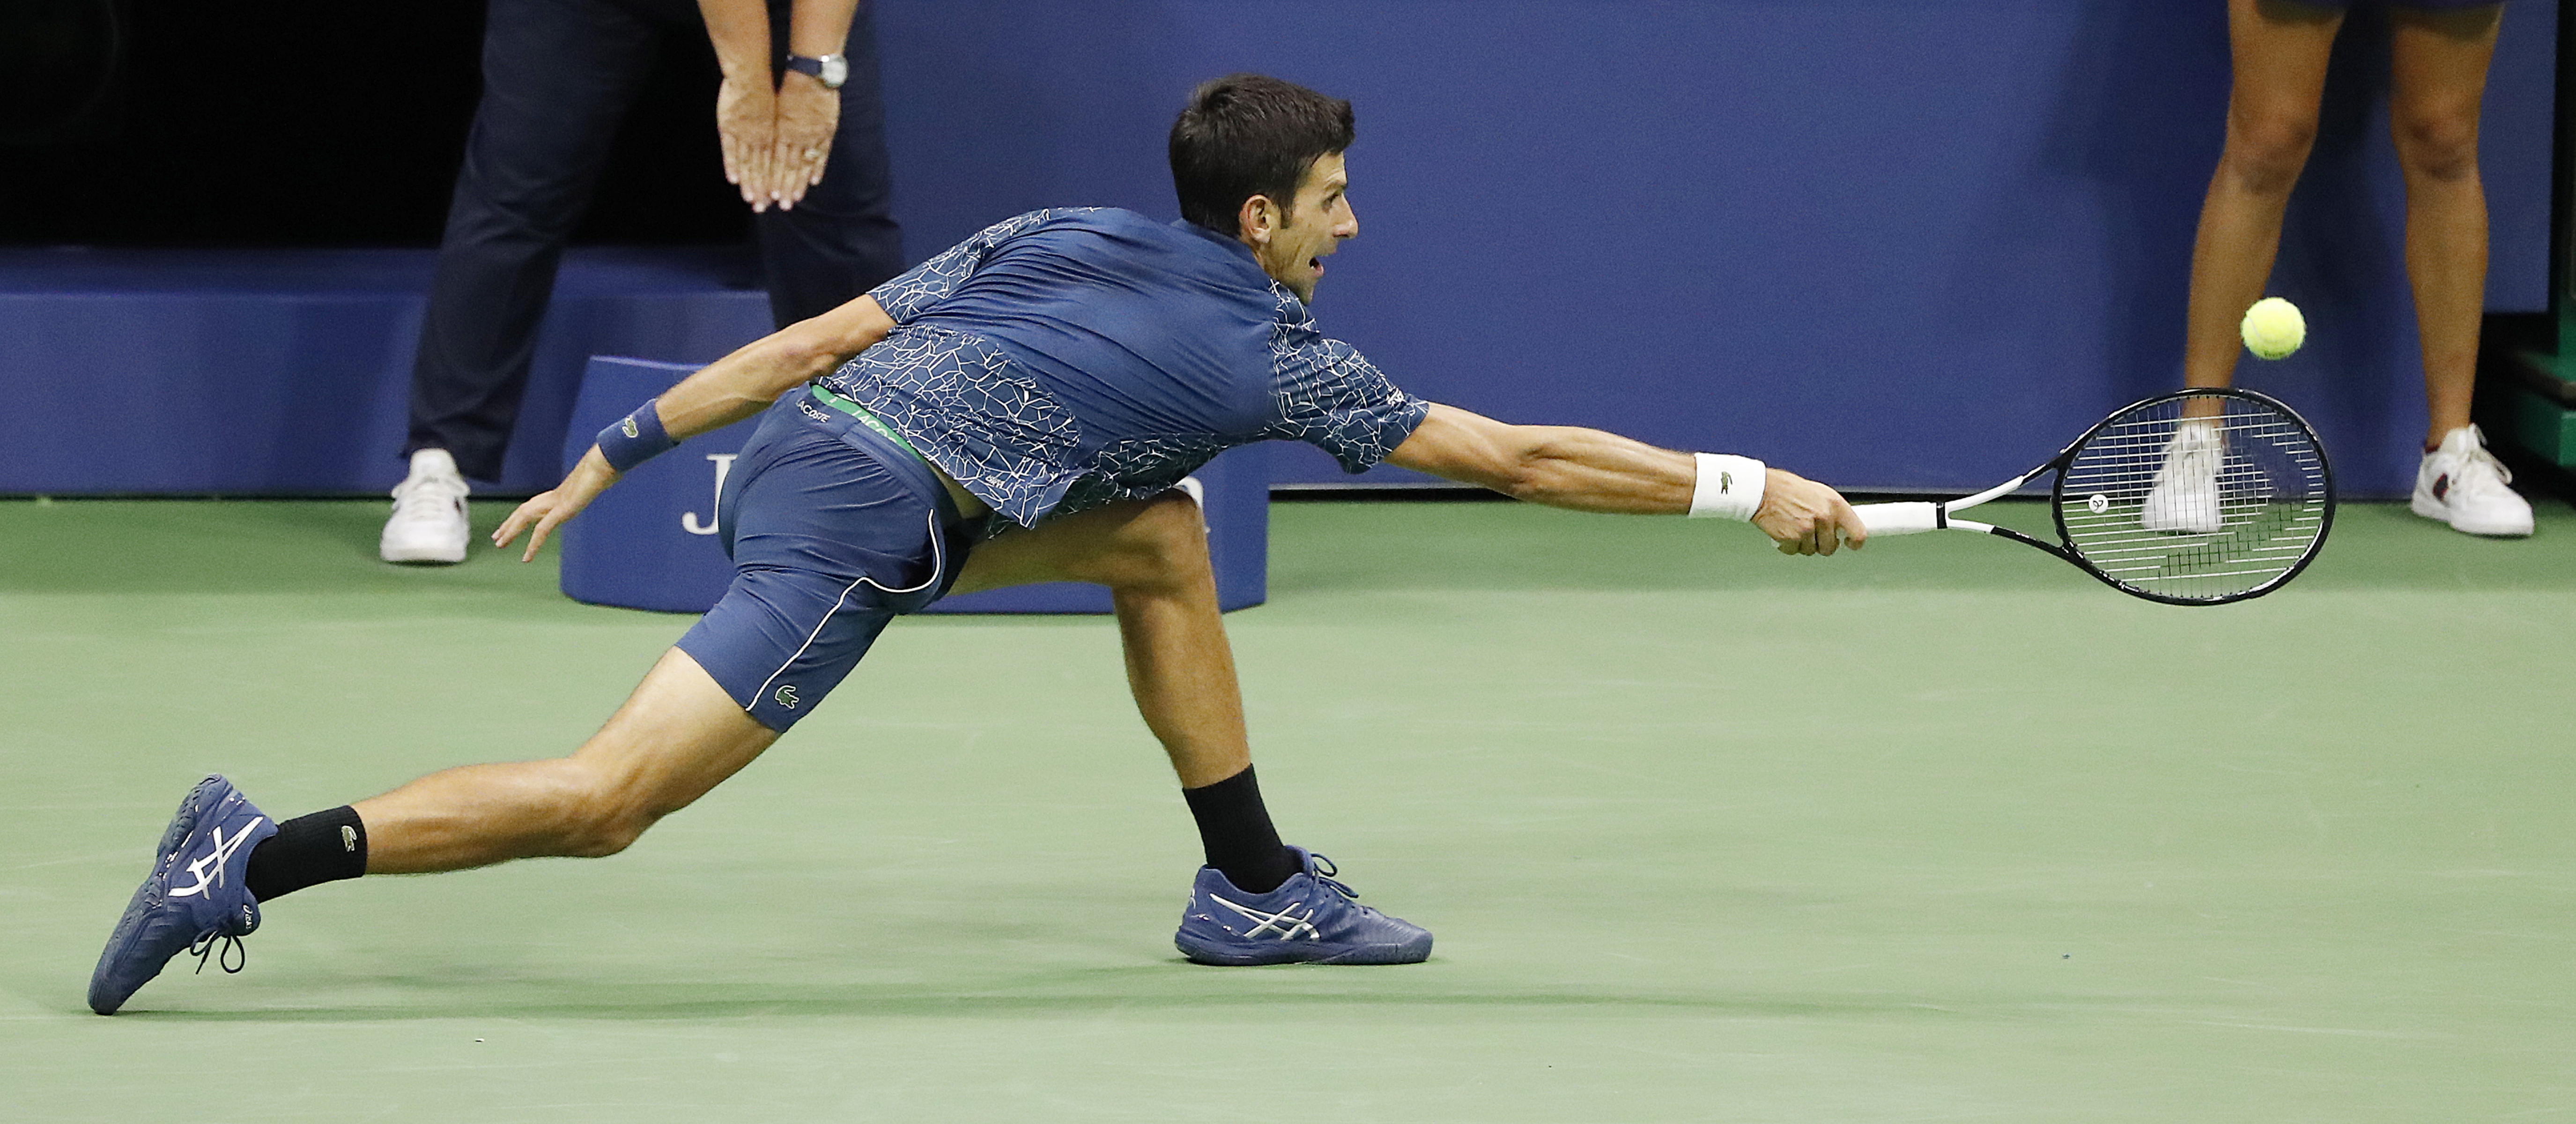 Djokovic alcanzó bolas que parecían imposibles. / Foto: EFE